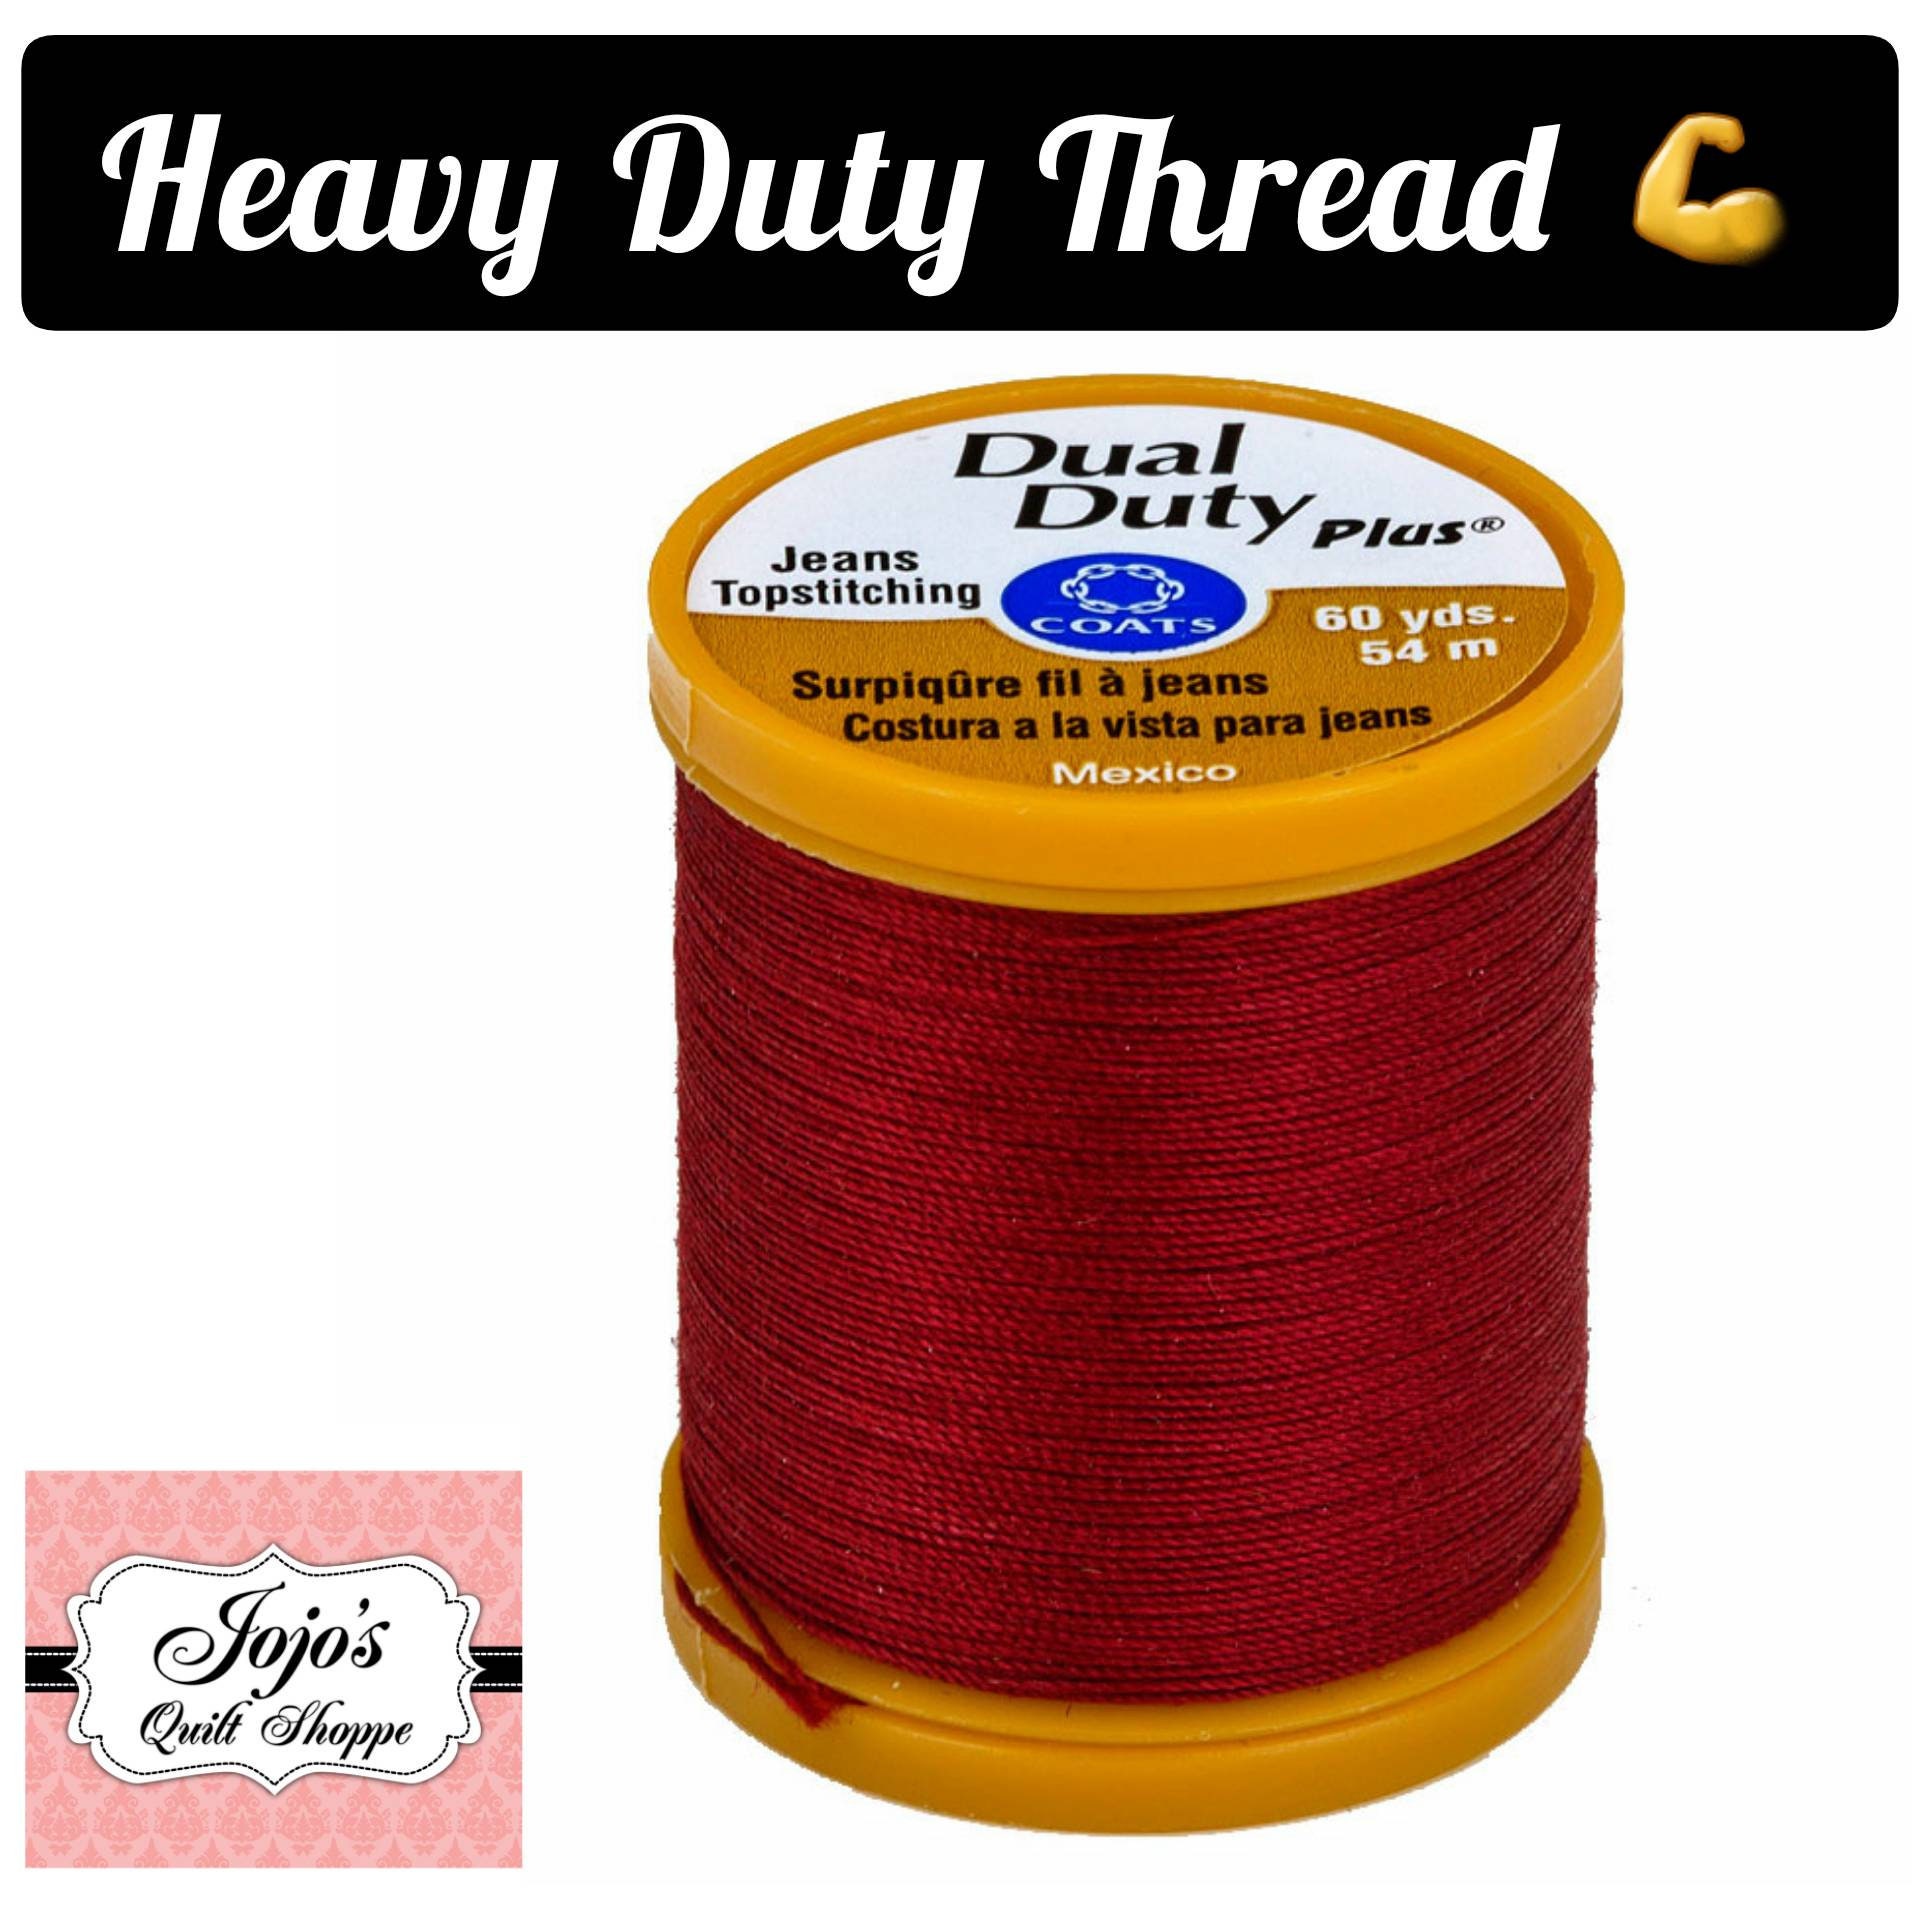 Heavy Duty Thread